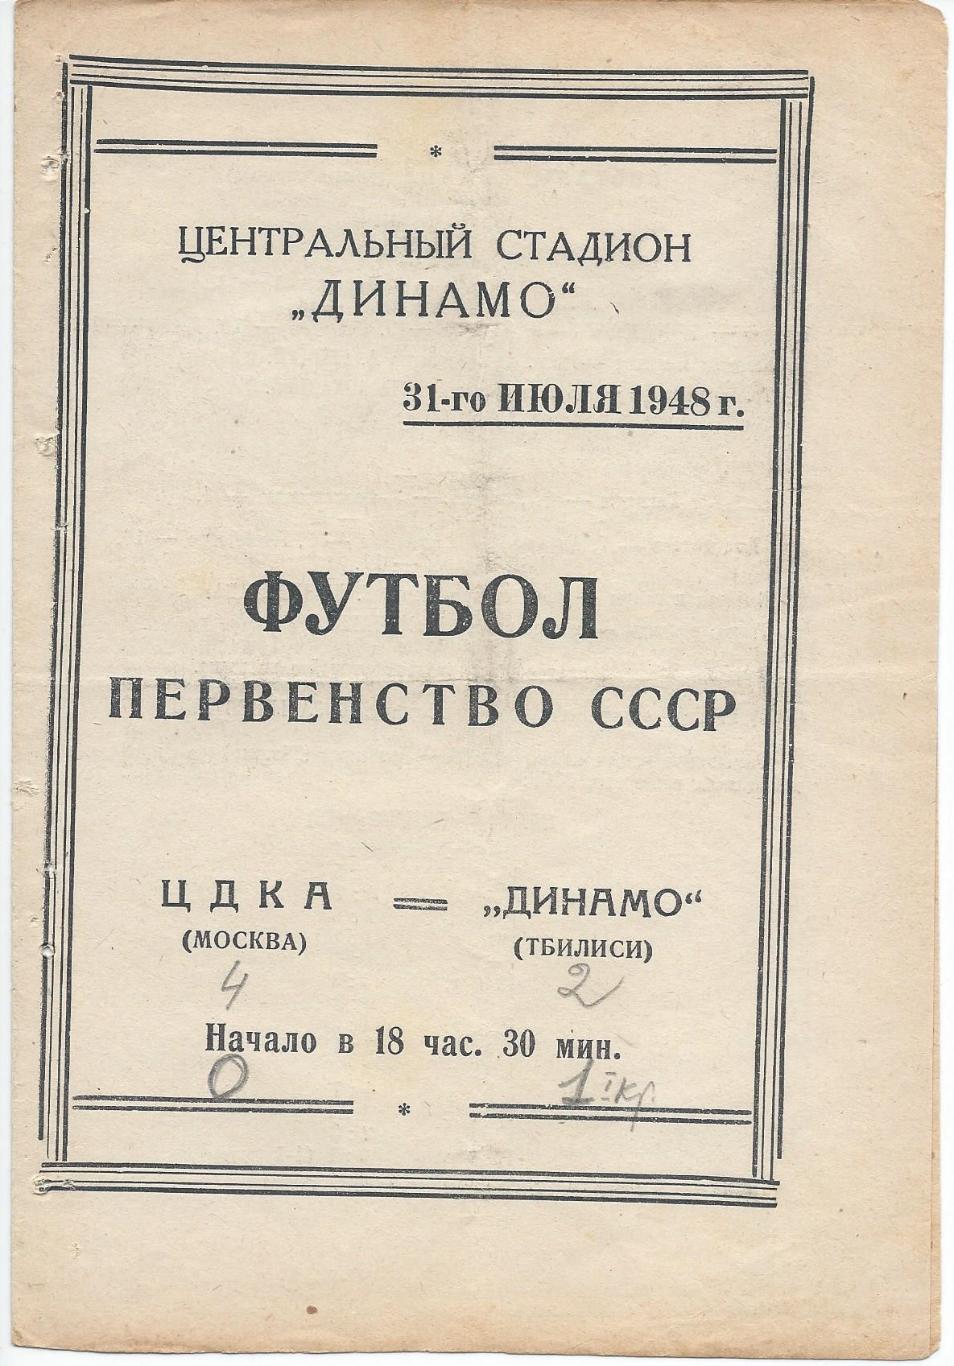 ЦДКА - Динамо Тбилиси 31 июля 1948